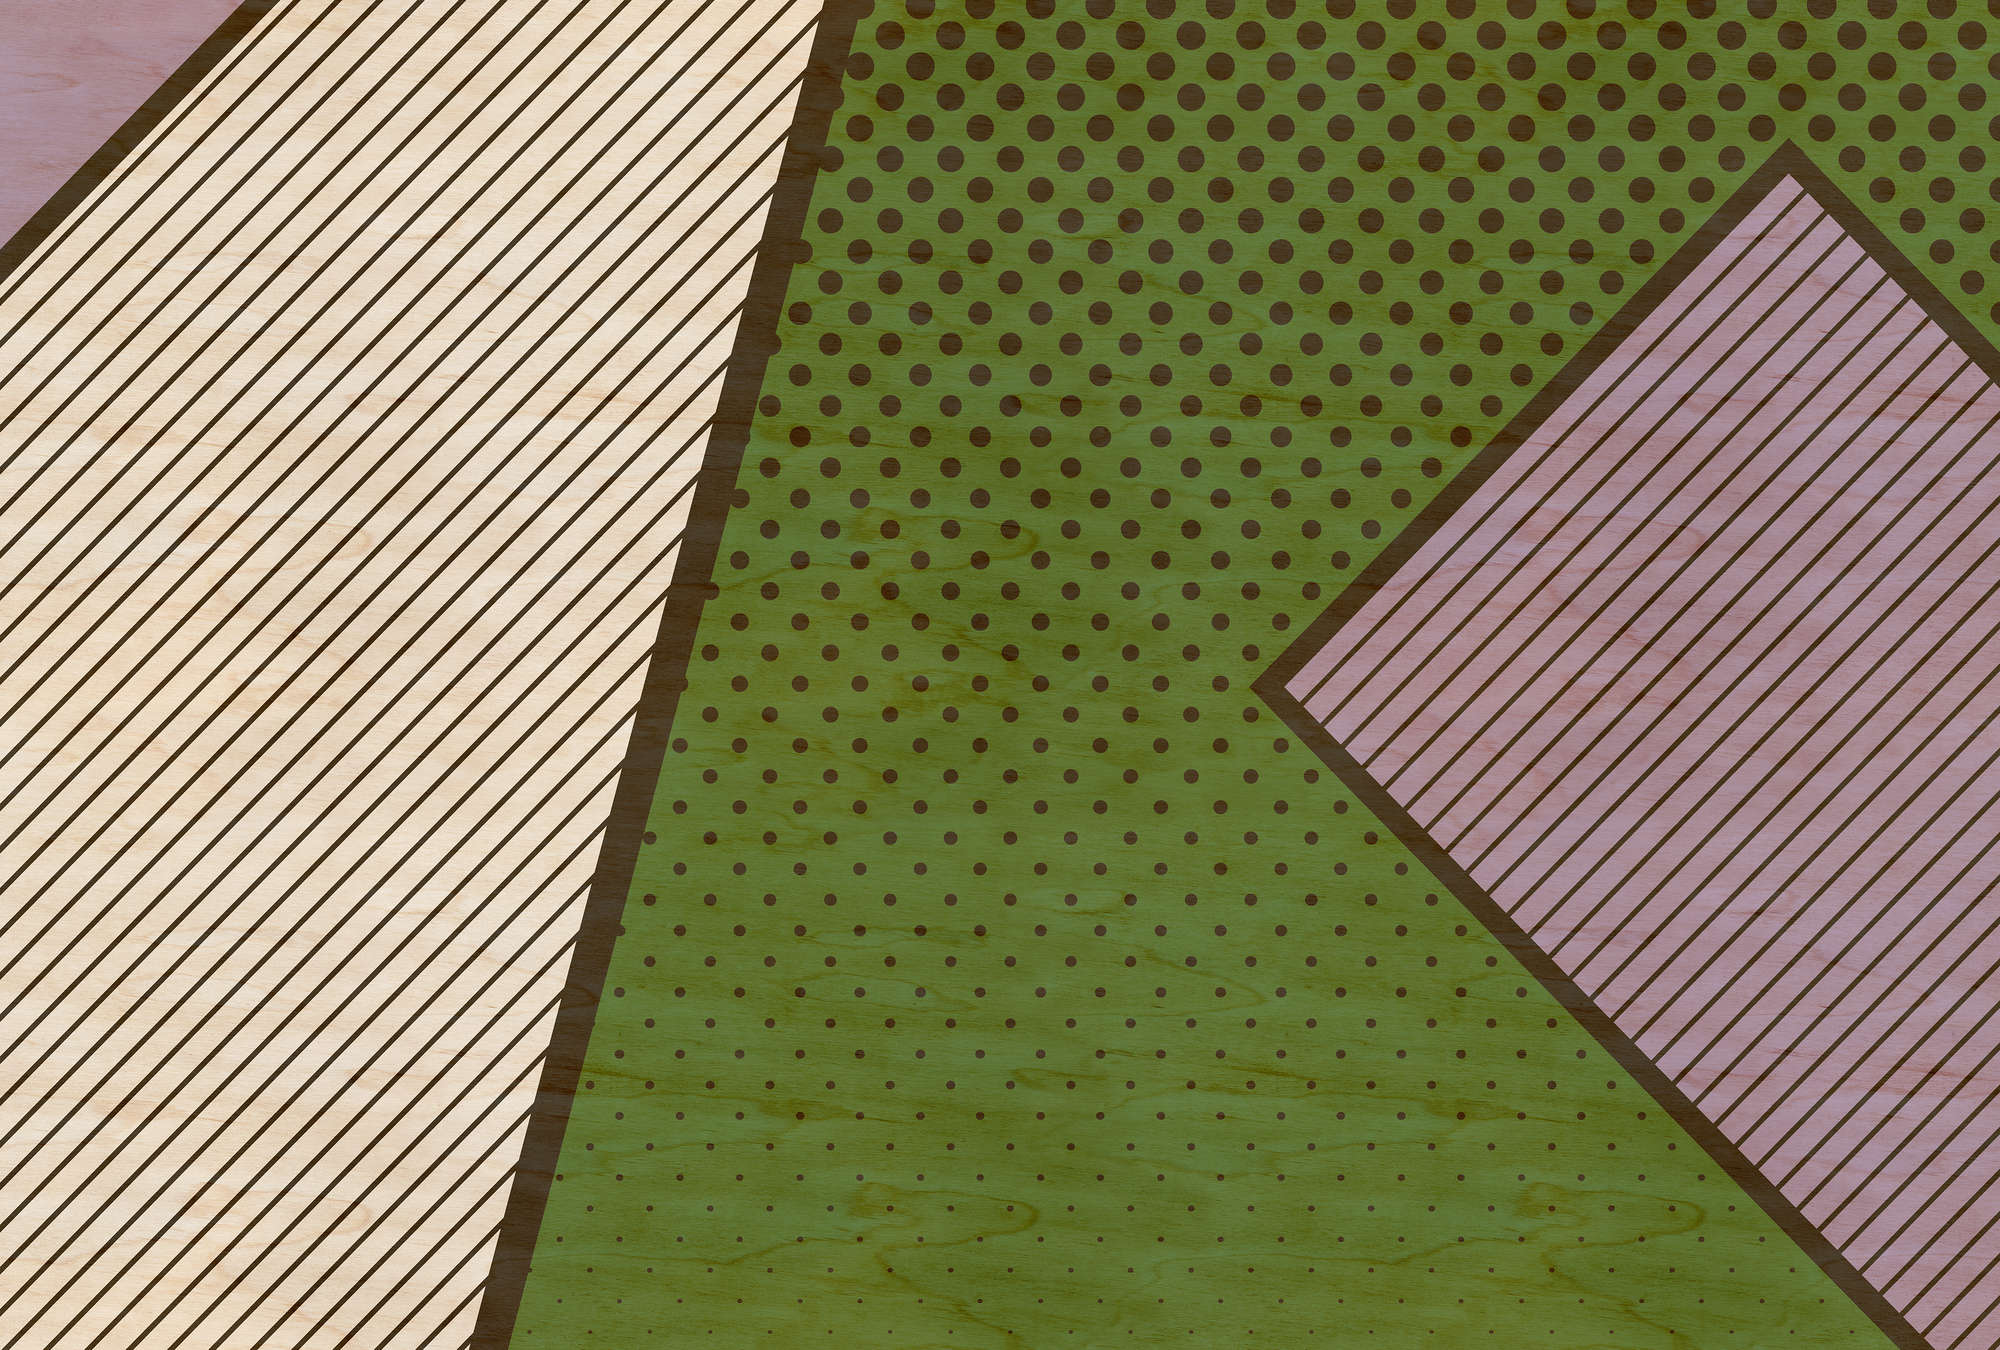             Vogelbende 3 - Abstract behang in multiplexstructuur met kleurrijke vlekken - Beige, Groen | Strukturenvlieseline
        